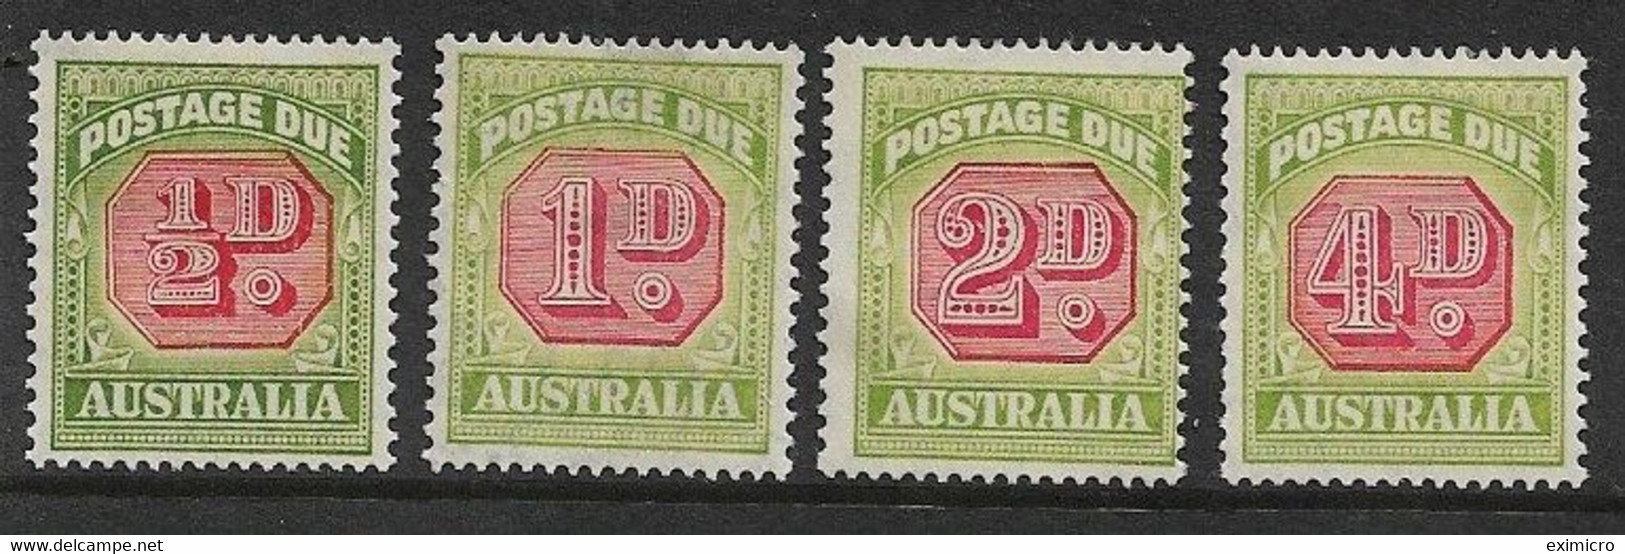 AUSTRALIA 1938 ½d, 1d, 2d, 4d POSTAGE DUES TYPE A SG D112/114, D116 MOUNTED MINT Cat £65 - Portomarken